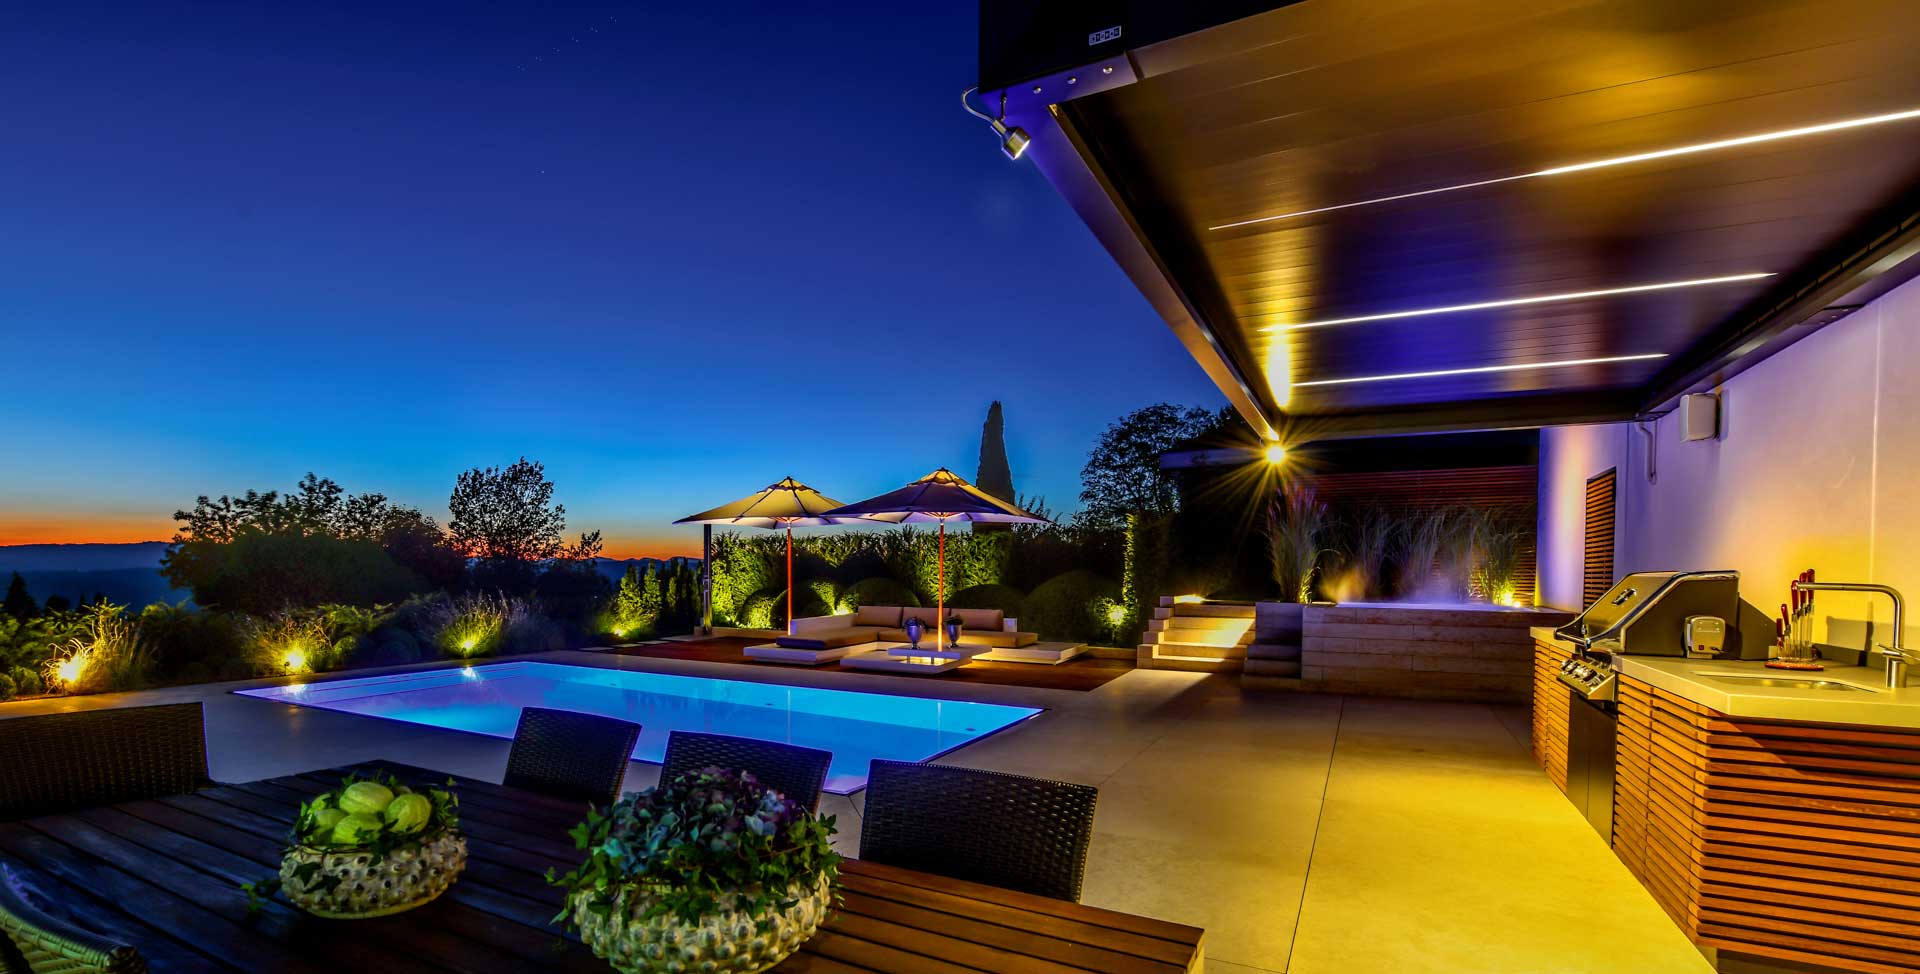 Terrasse bei Nacht, Pool und Grillbereich wird mit Megaspot und Maxispot beleuchtet 